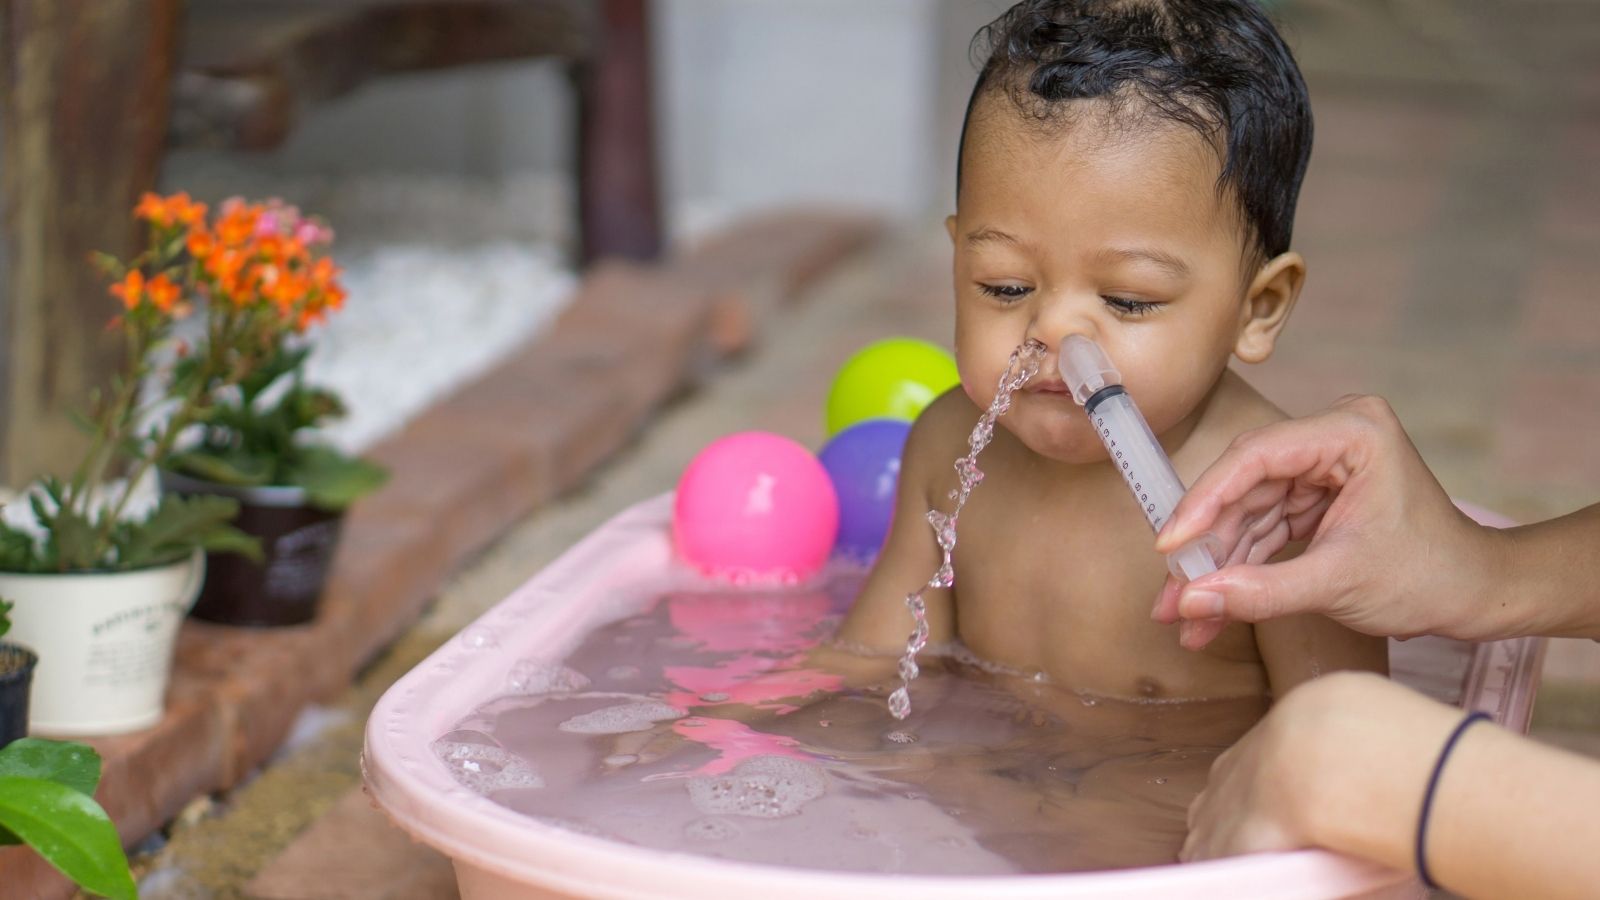 Cómo hacer el lavado nasal a un bebé para que respire mejor